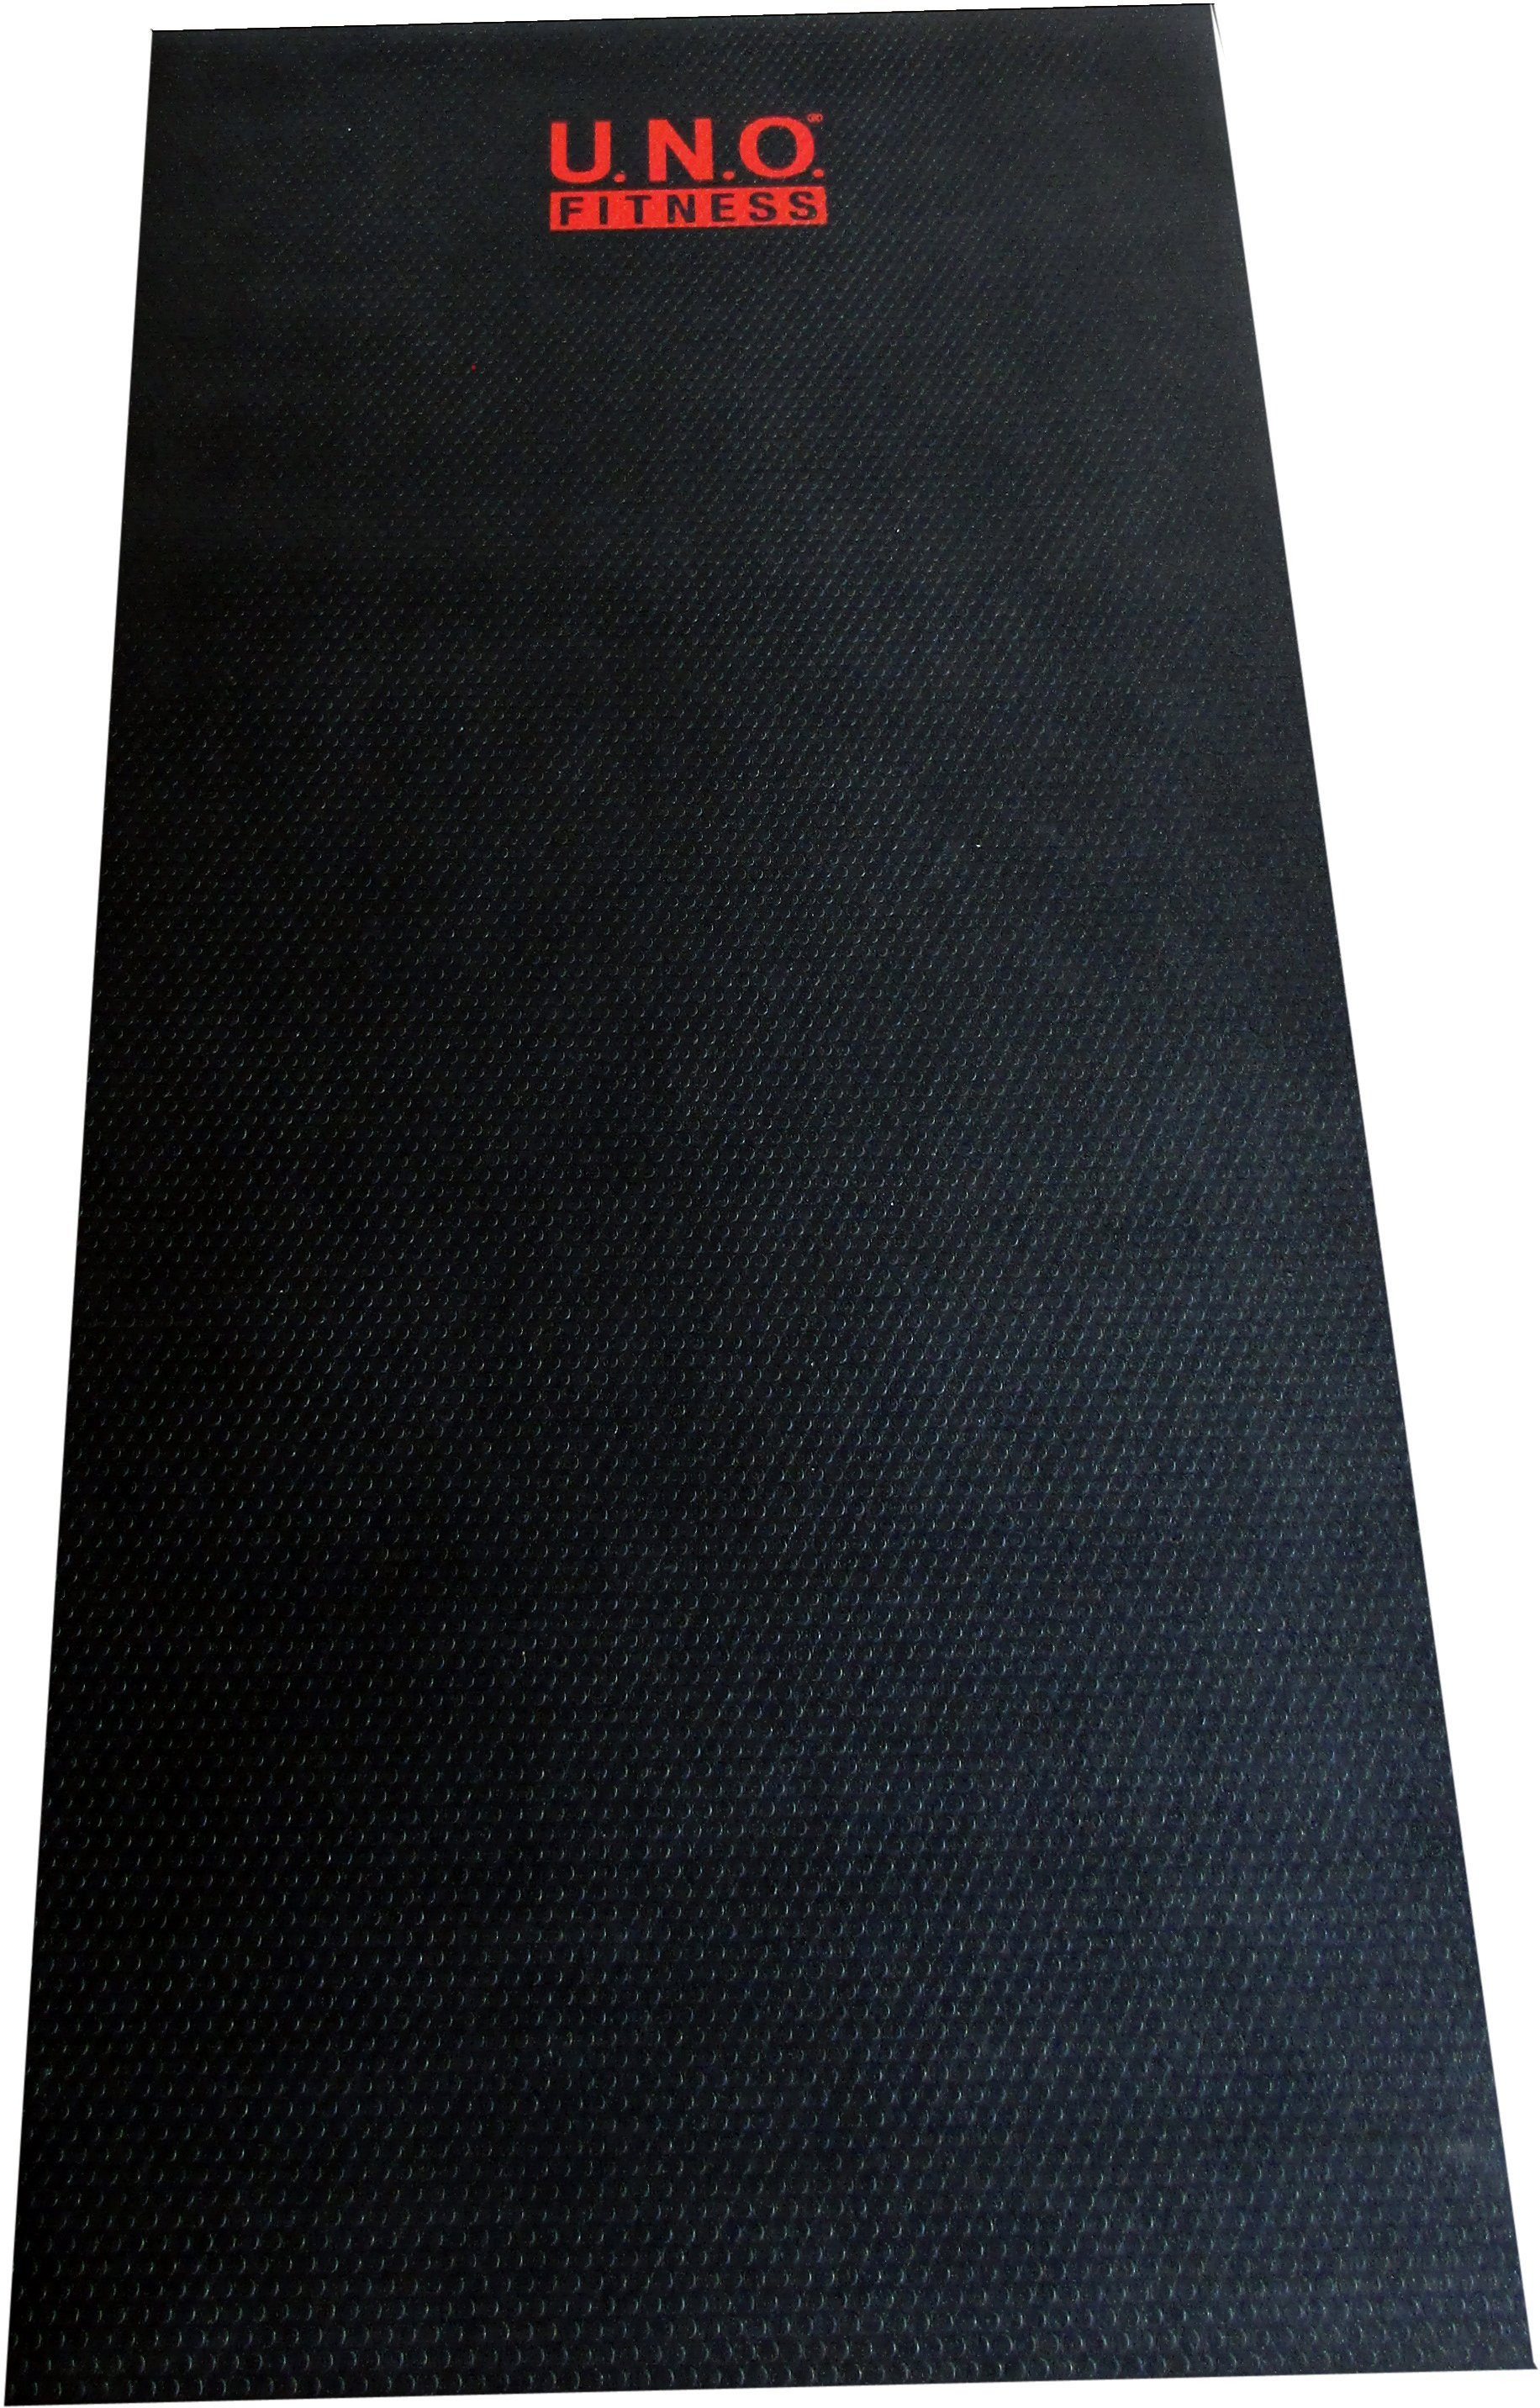 U.N.O. Fitnessgeräte für schwarz/grau Bodenschutzplatte, FITNESS